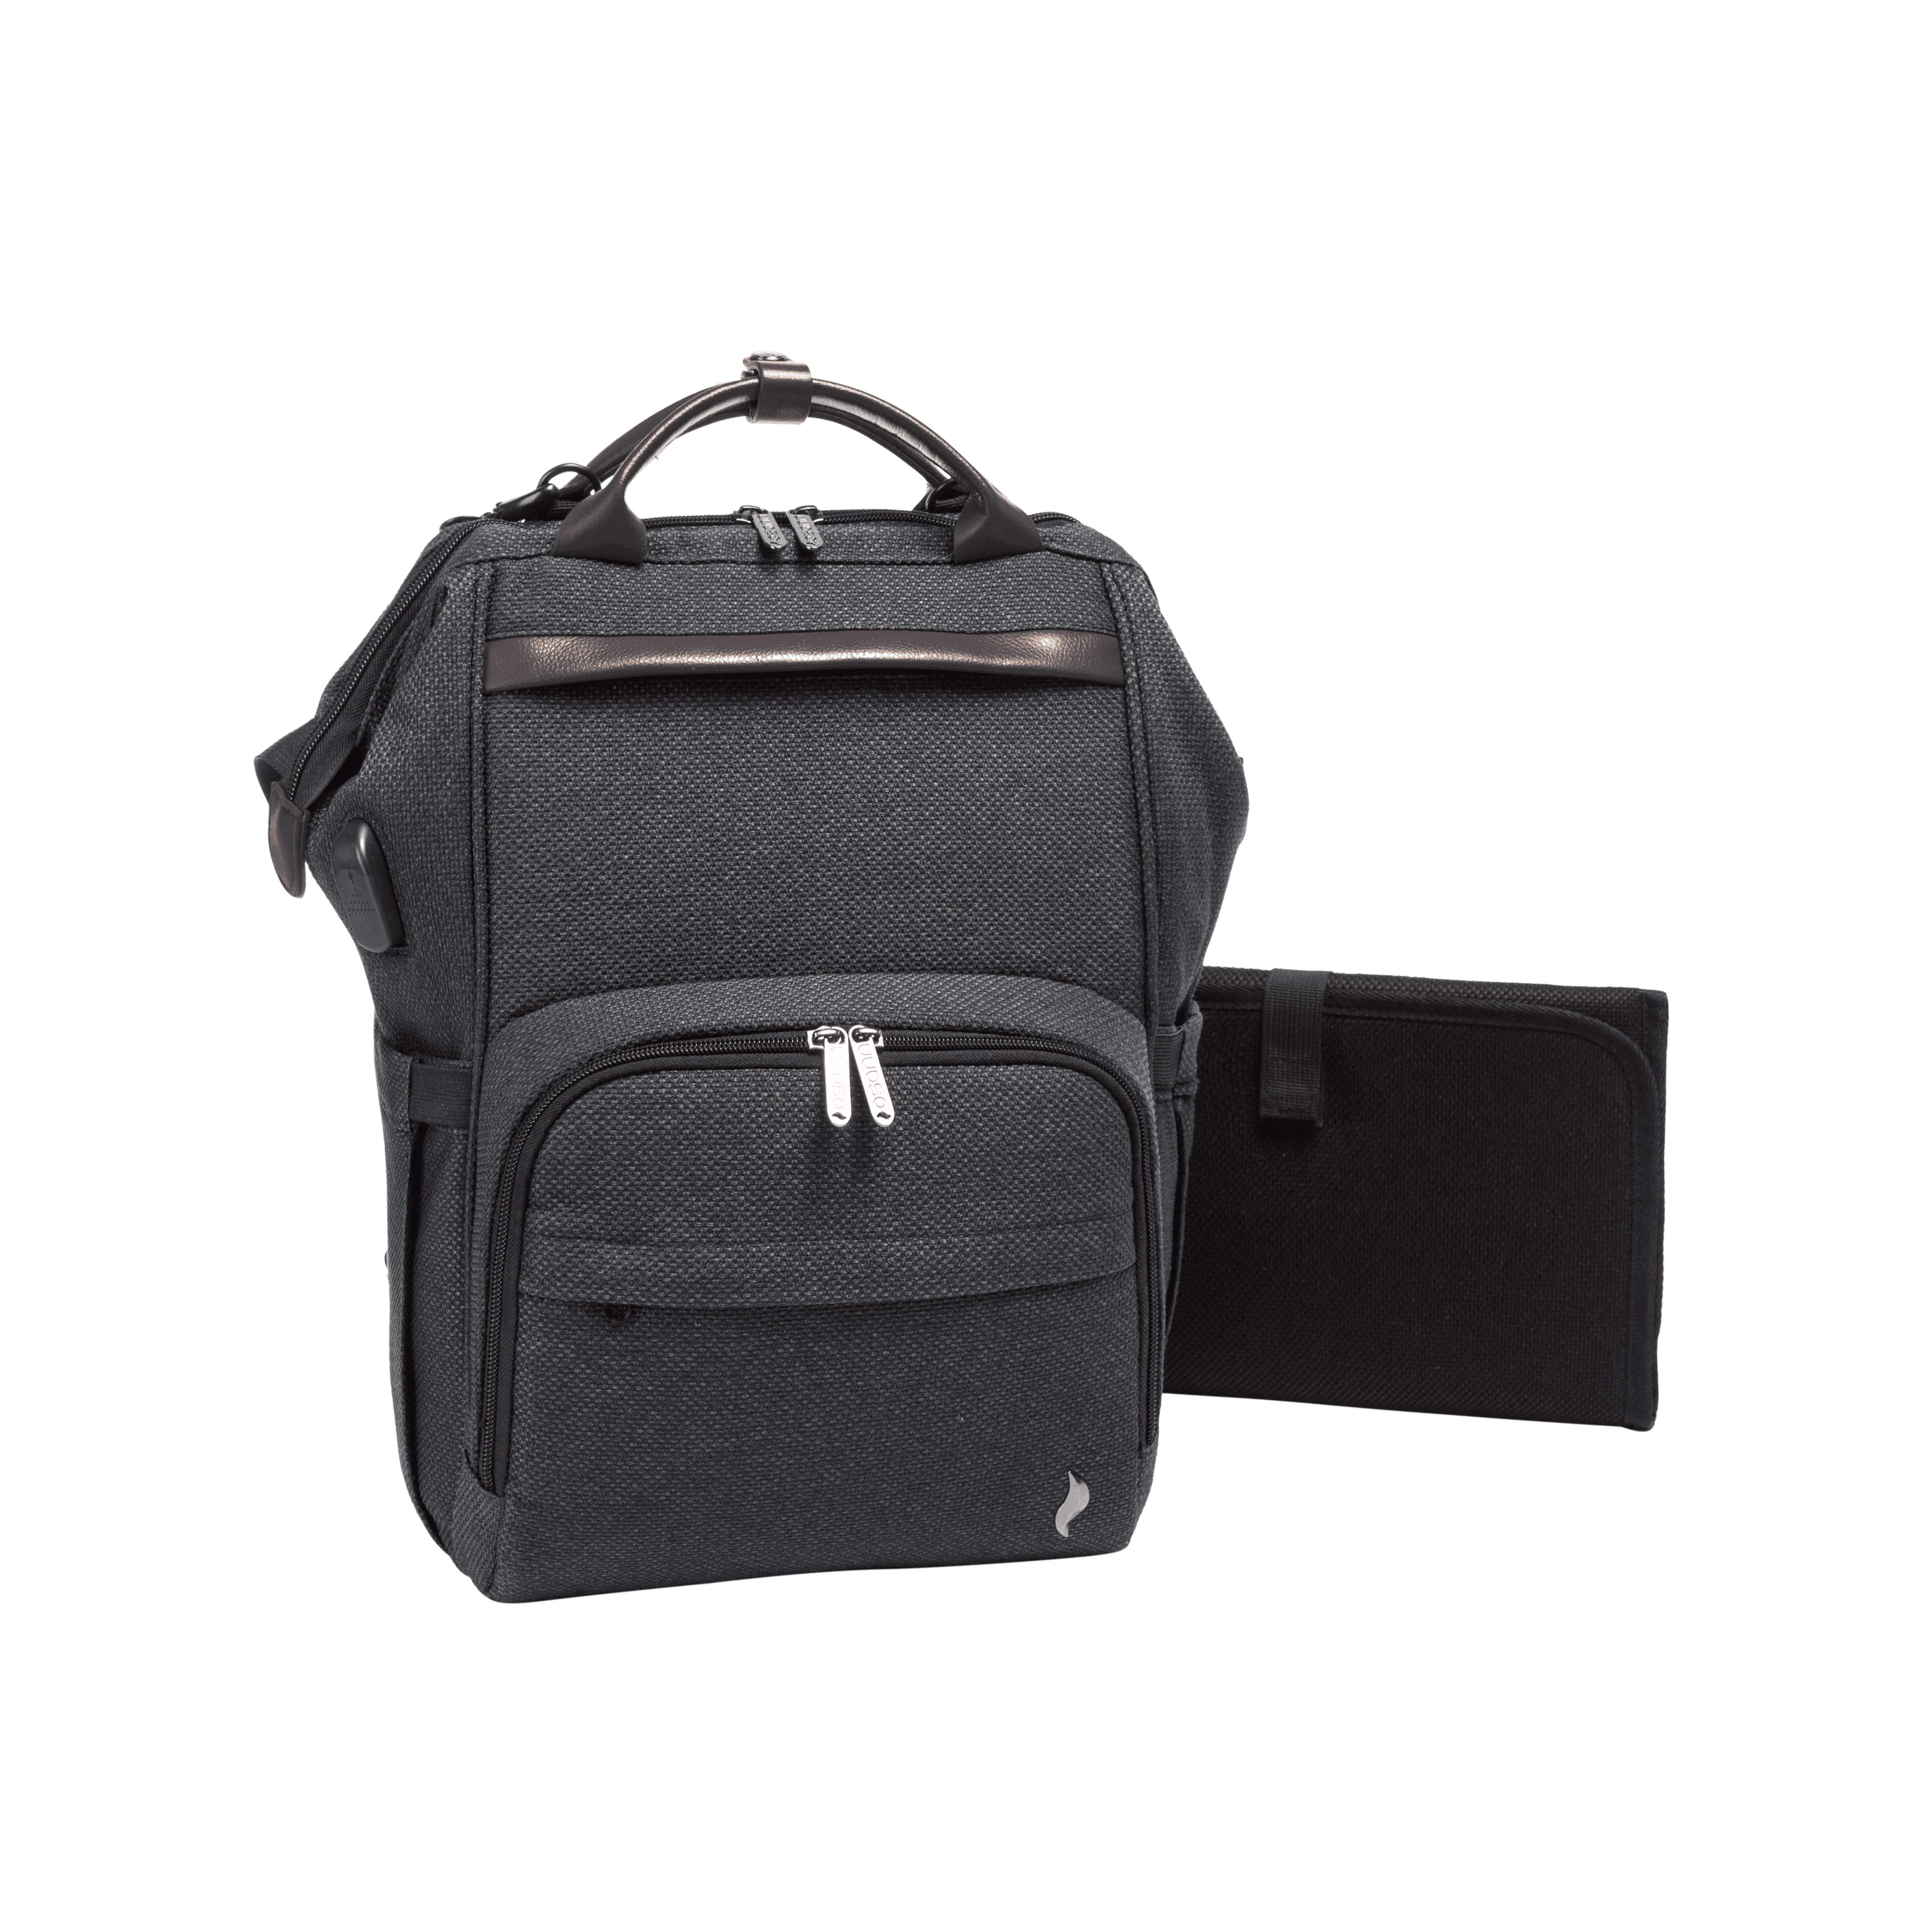 Osann Wickelrucksack Backpack, Wickelrucksack Wickeltasche mit Handyport Chrome